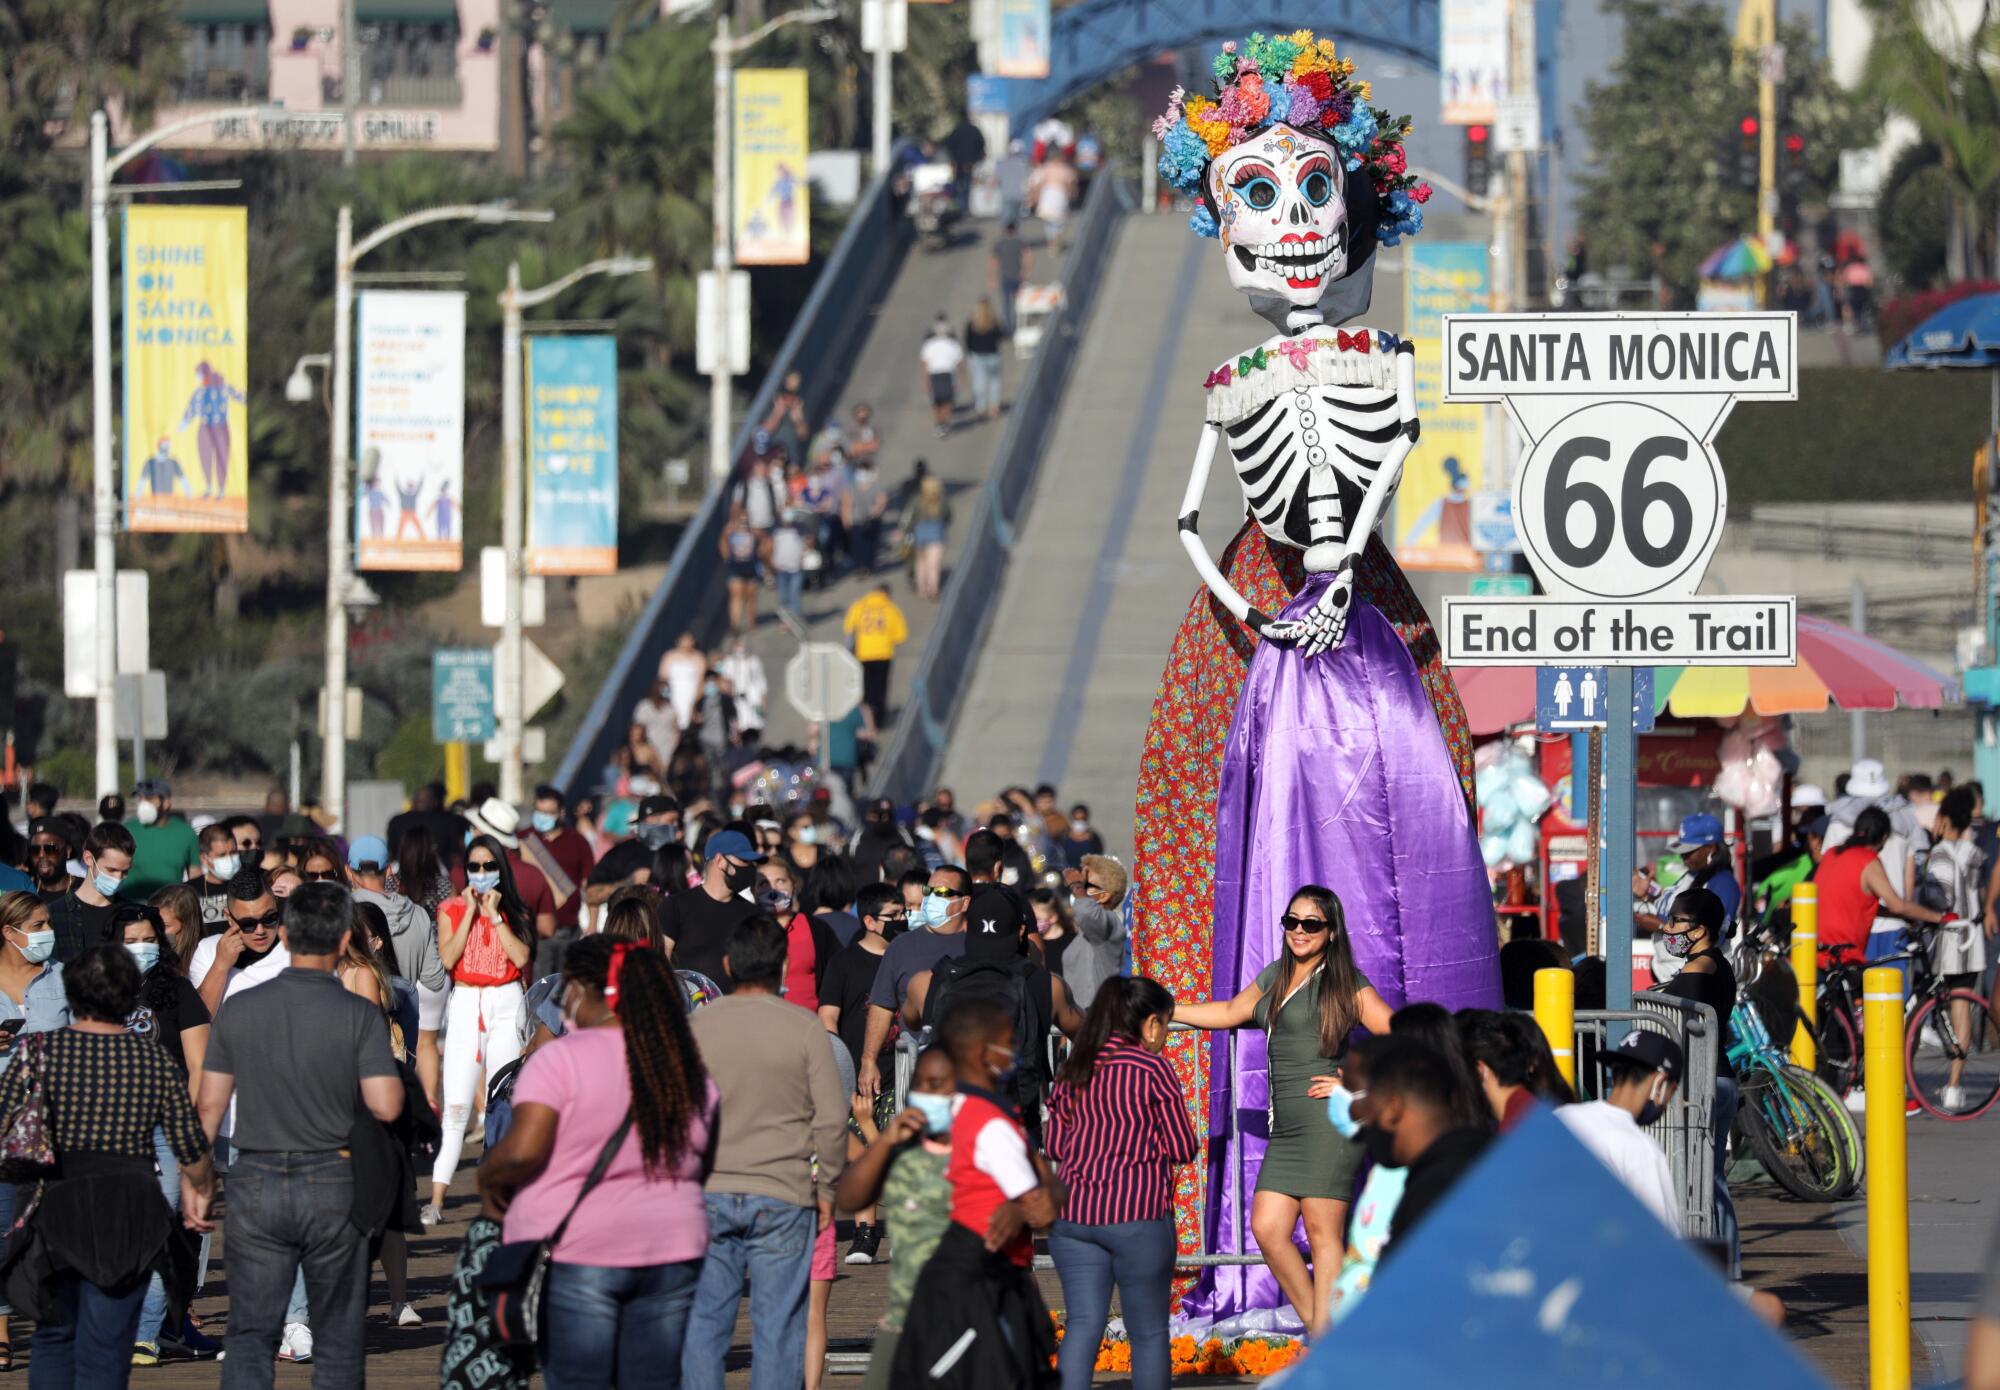 La estatua del Día de los Muertos saluda a la multitud en el muelle de Santa Mónica.